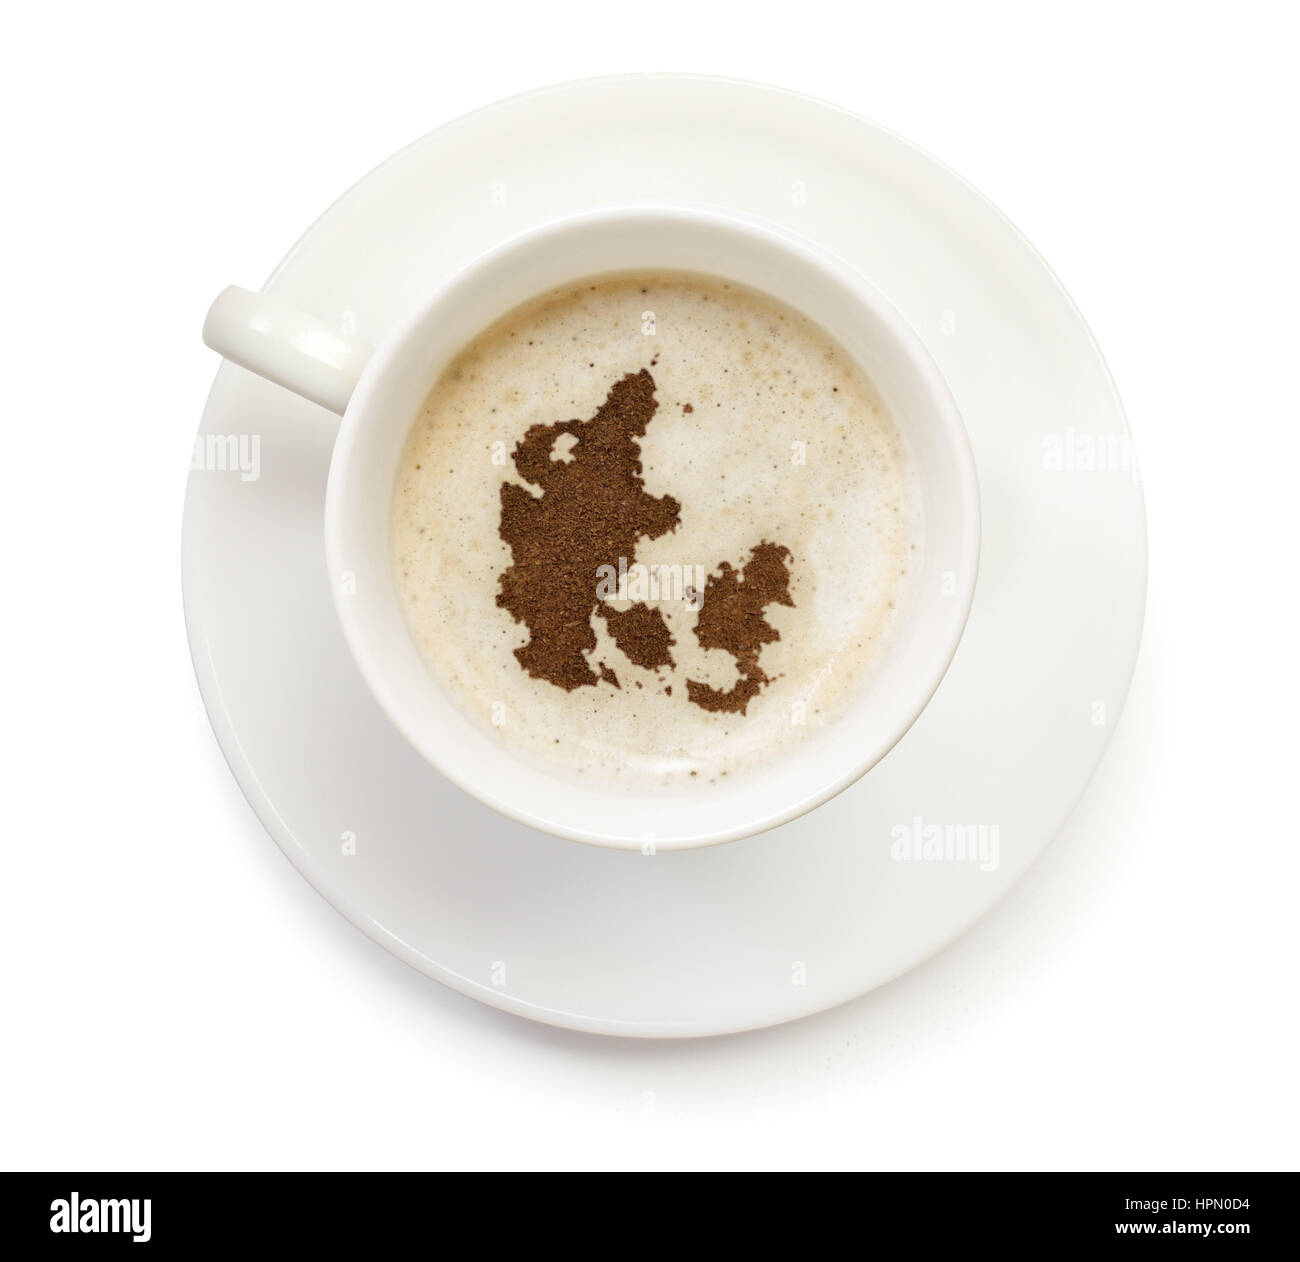 Eine Tasse Kaffee mit Schaum und Pulver in Form von Dänemark. (Serie  Stockfotografie - Alamy